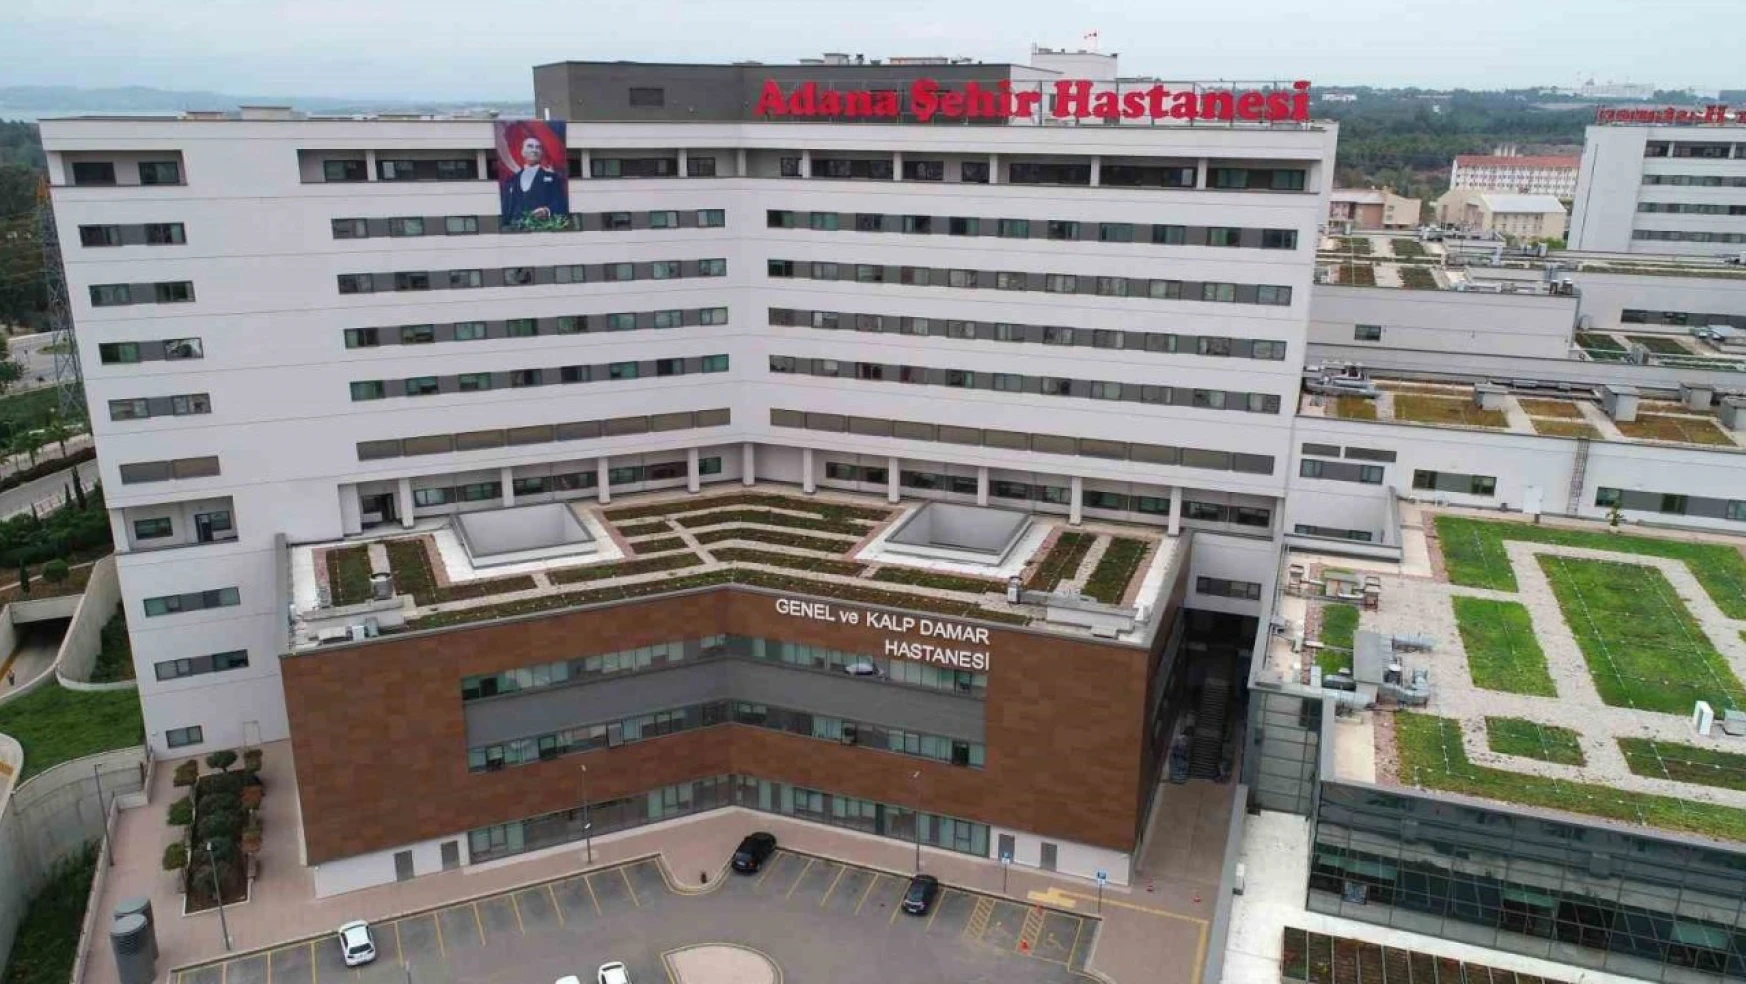 Adana Şehir Hastanesi'nde 6 yılda 10 milyondan fazla hastaya hizmet verildi, 250 bin ameliyat yapıldı